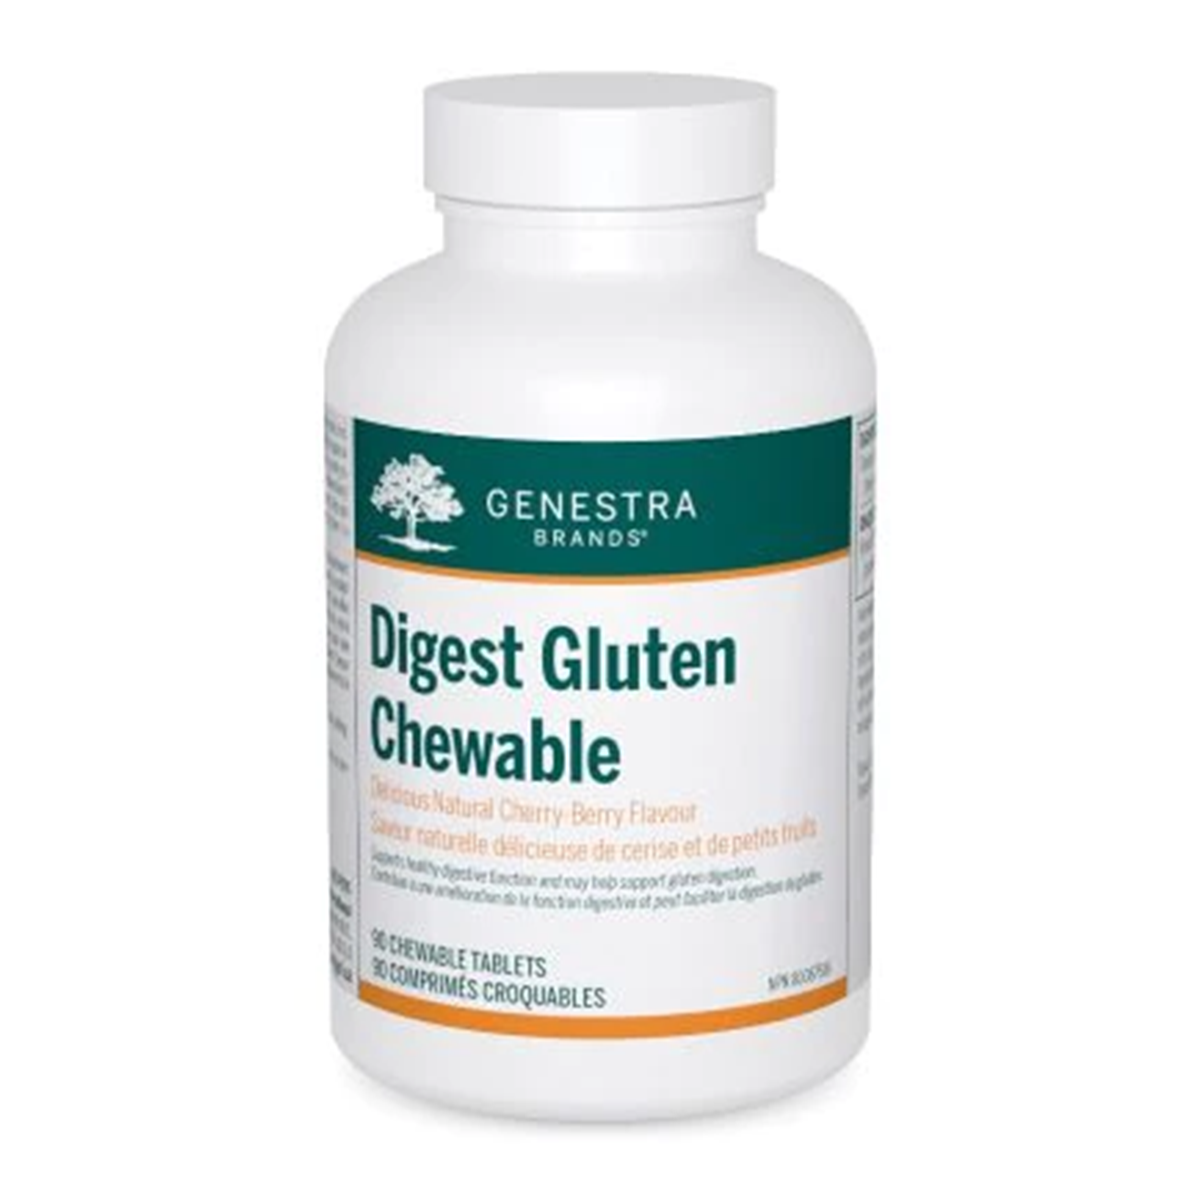 Genestra Digest Gluten Chewable 90 tabs